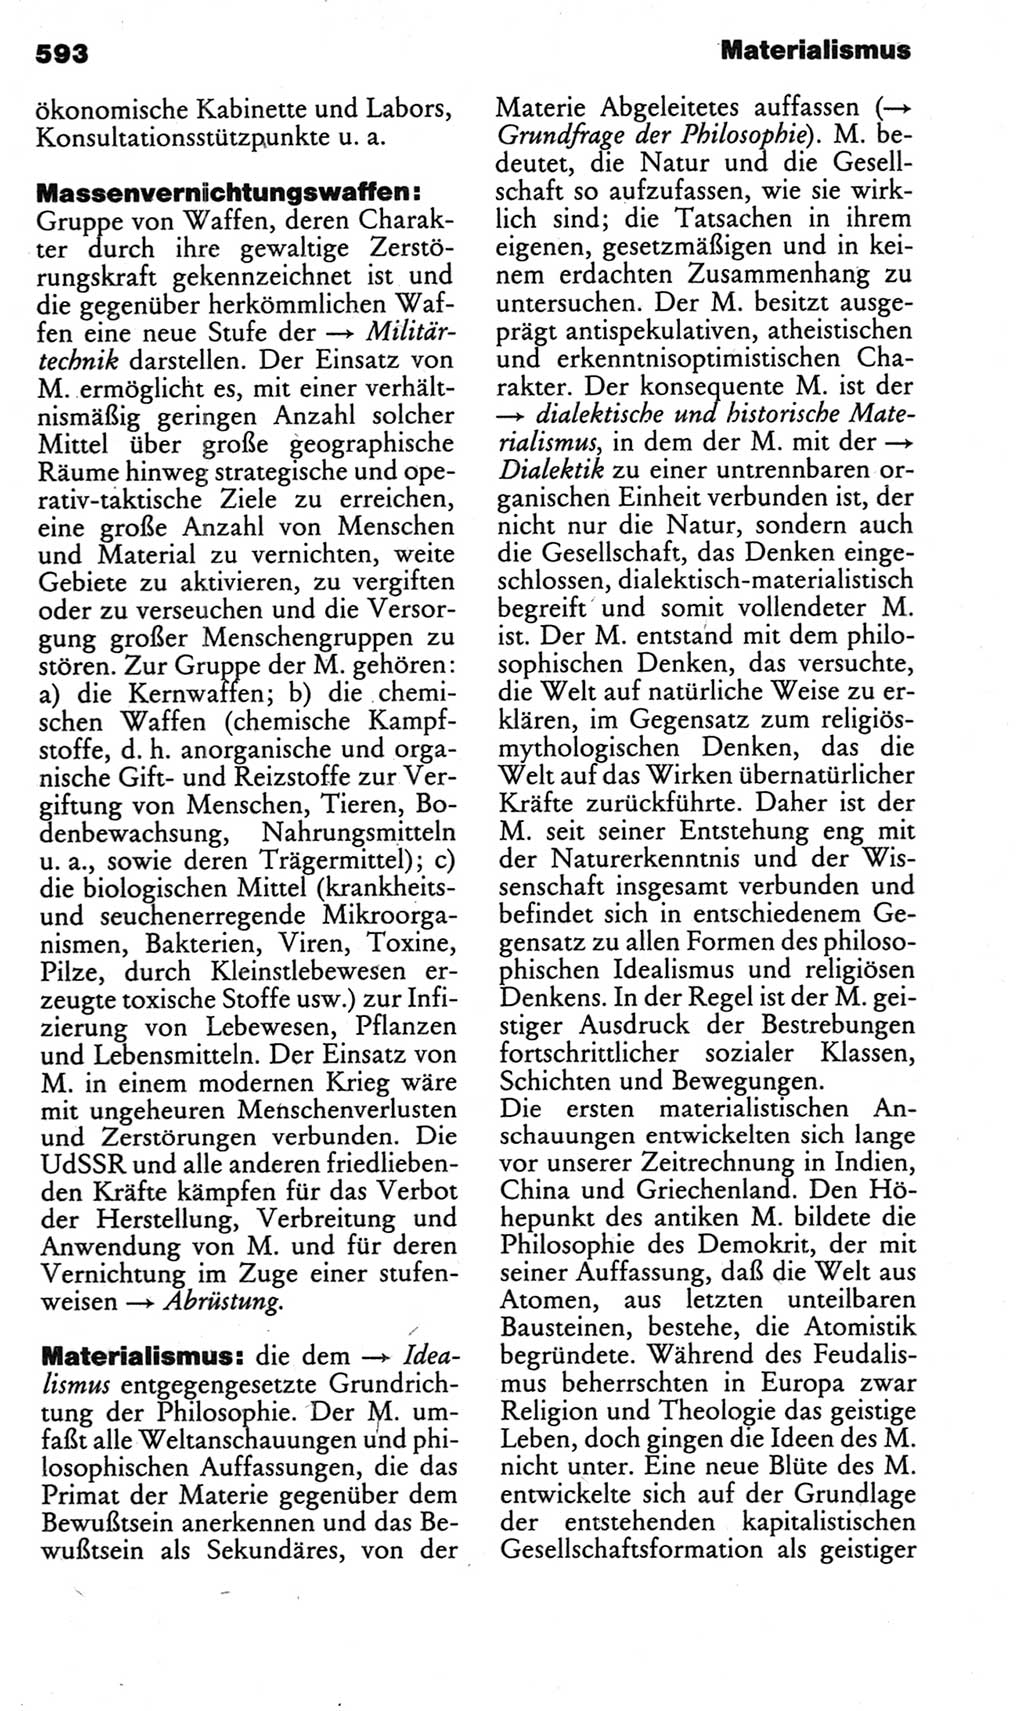 Kleines politisches Wörterbuch [Deutsche Demokratische Republik (DDR)] 1983, Seite 593 (Kl. pol. Wb. DDR 1983, S. 593)